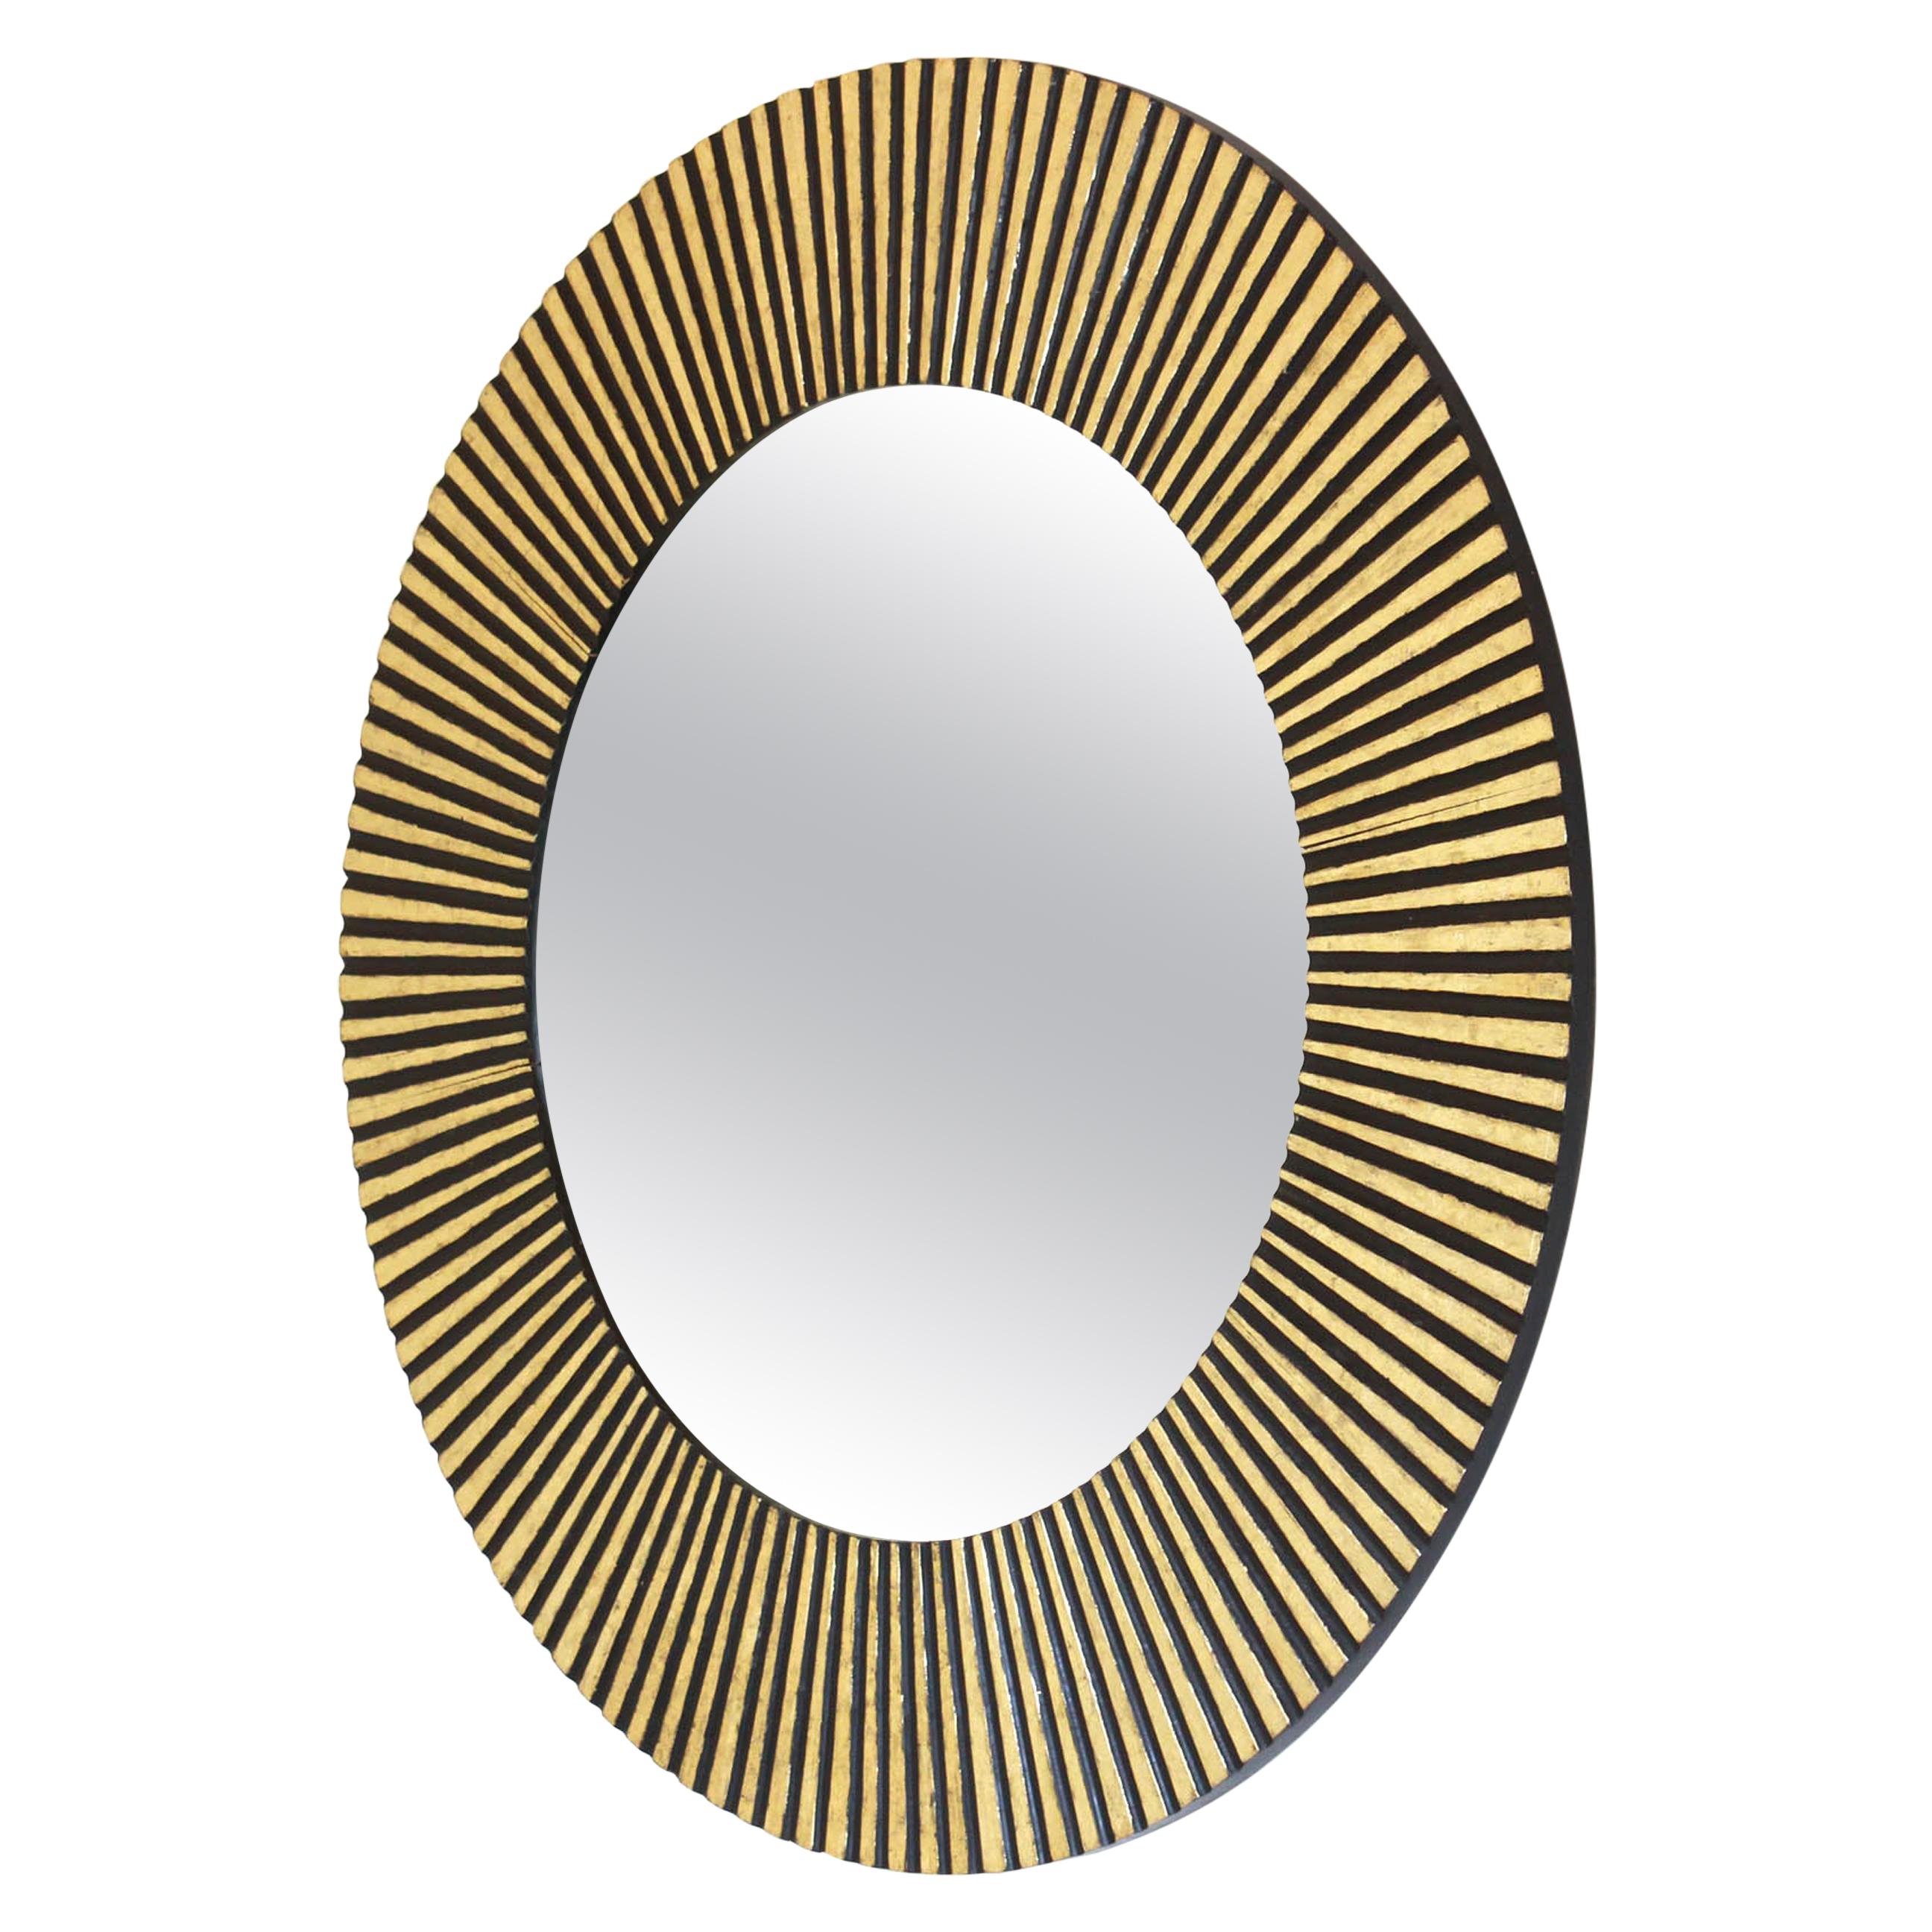 1950s Vintage Gold Leaf round Sunburst Mirror in Inlaid Solid Wood